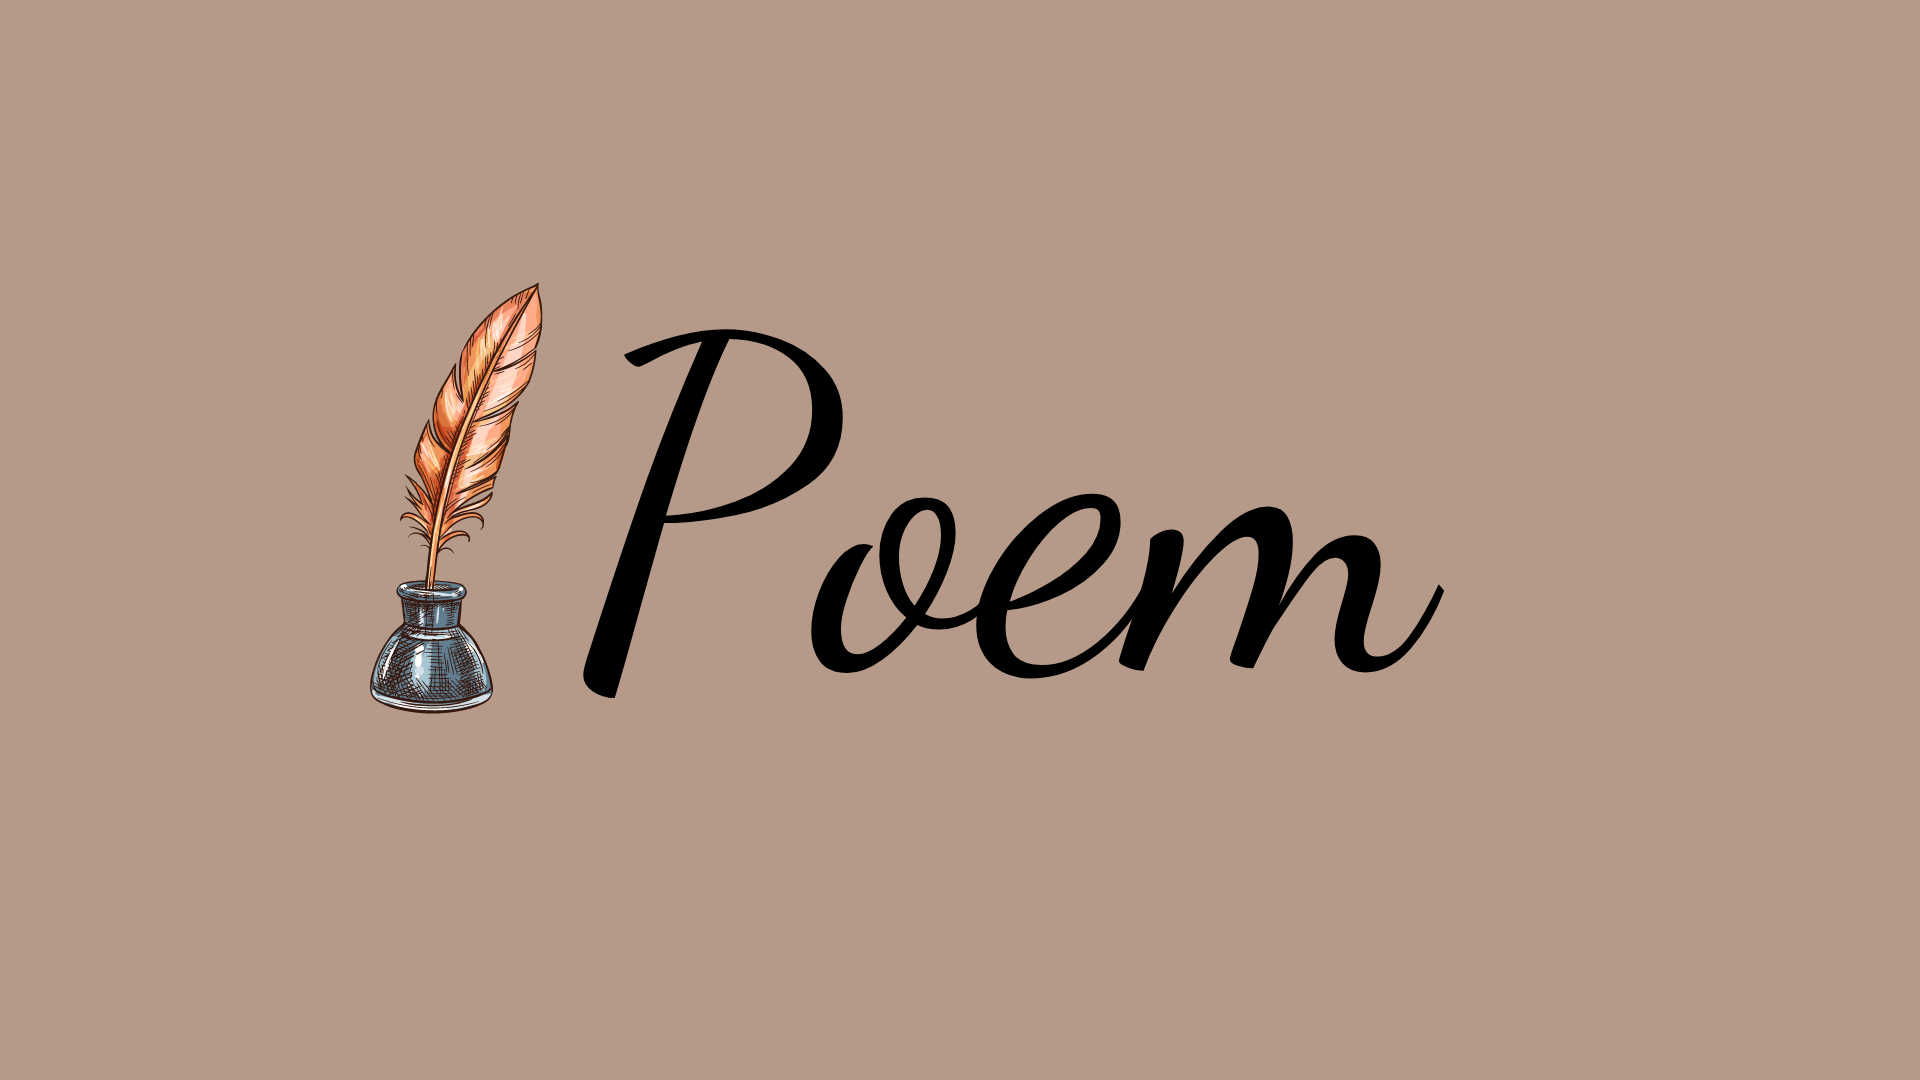 Tại sao truyện thơ phản ánh cuộc sống của người nghèo khổ?
